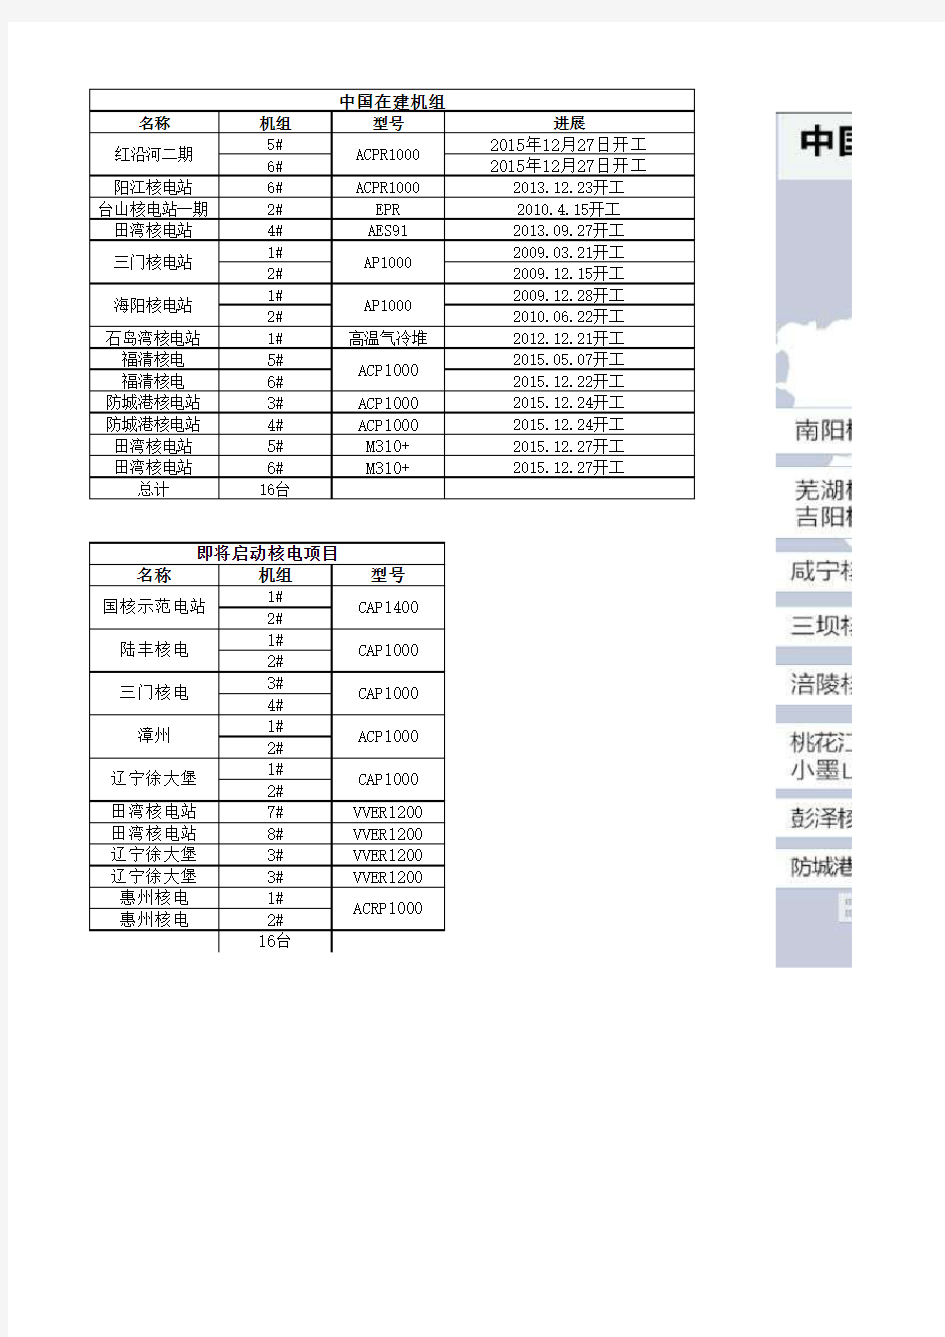 中国核电机组统计(截止2018.8.7)